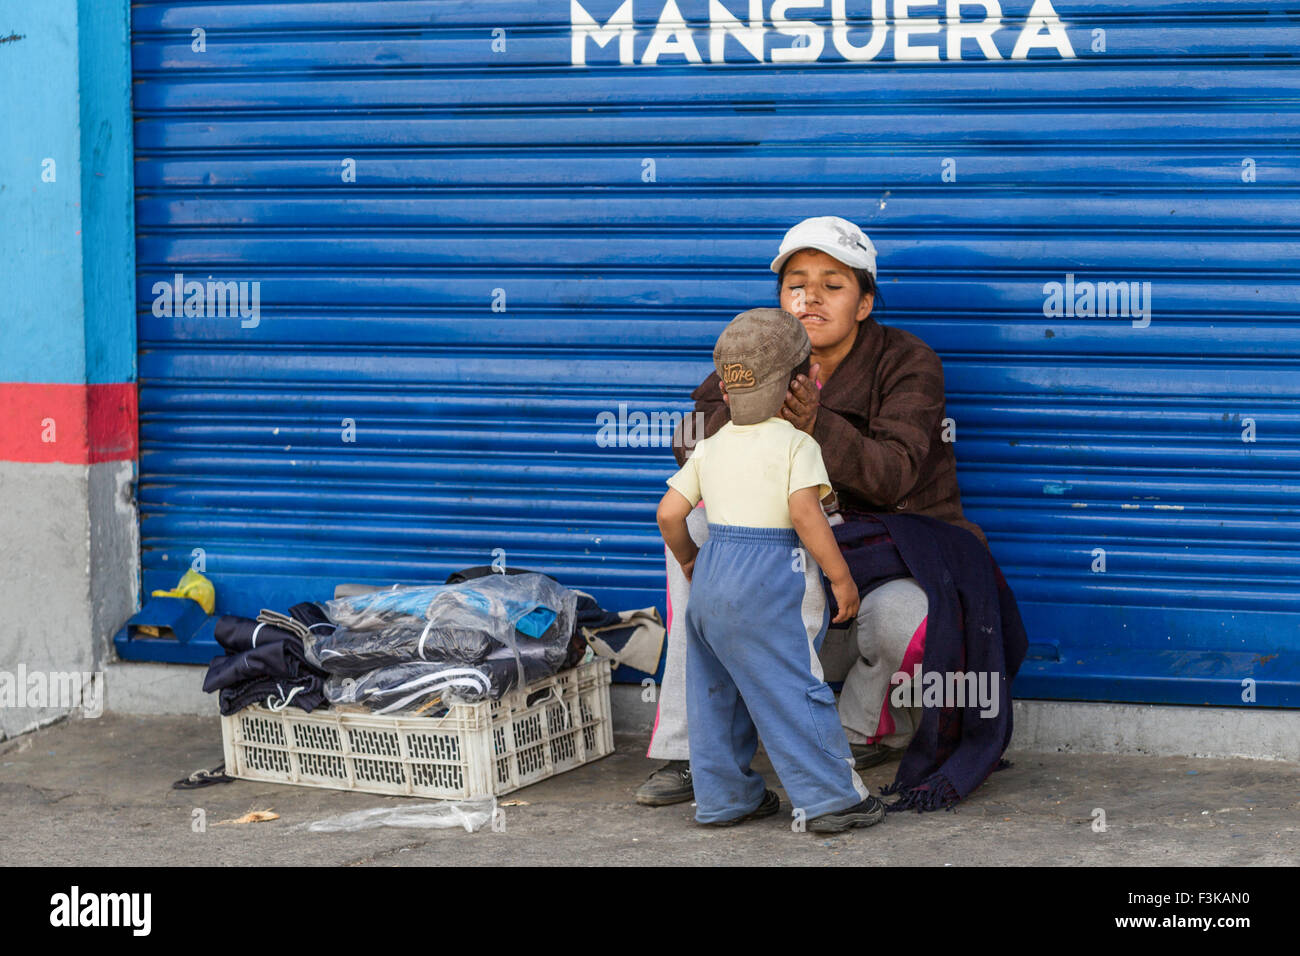 Emotionaler Moment mit einem Straße Verkäufer Frau die Aufmerksamkeit auf ihren kleinen Sohn Stockfoto